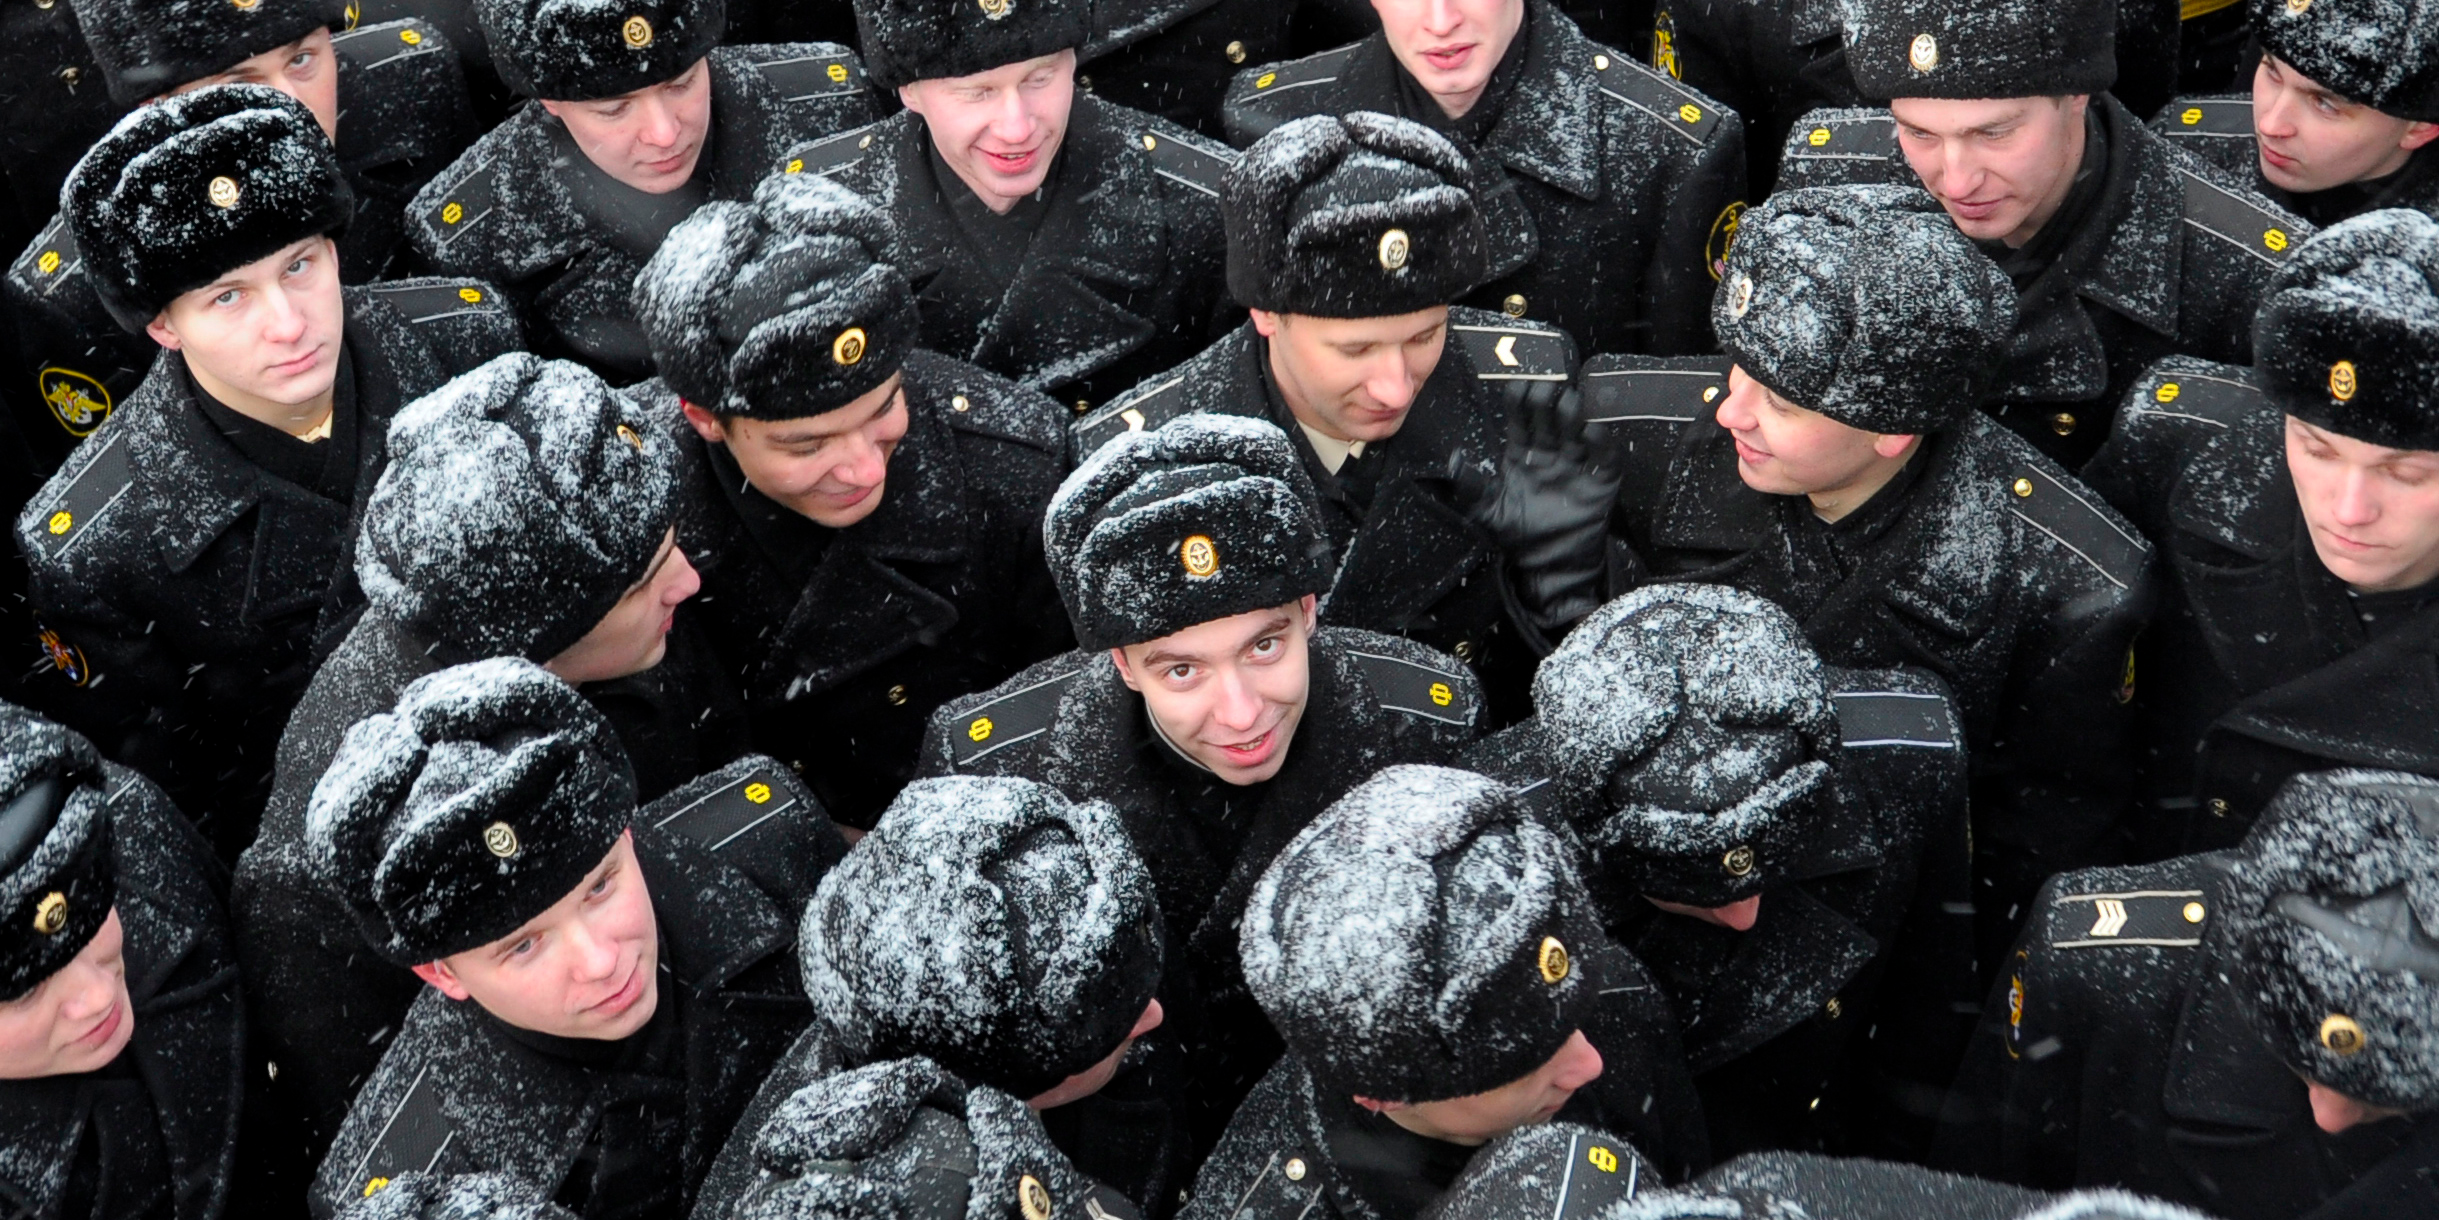 演習に向かうロシアの重原子力ミサイル巡洋艦の式典に参加した船員たち。2010年3月30日。